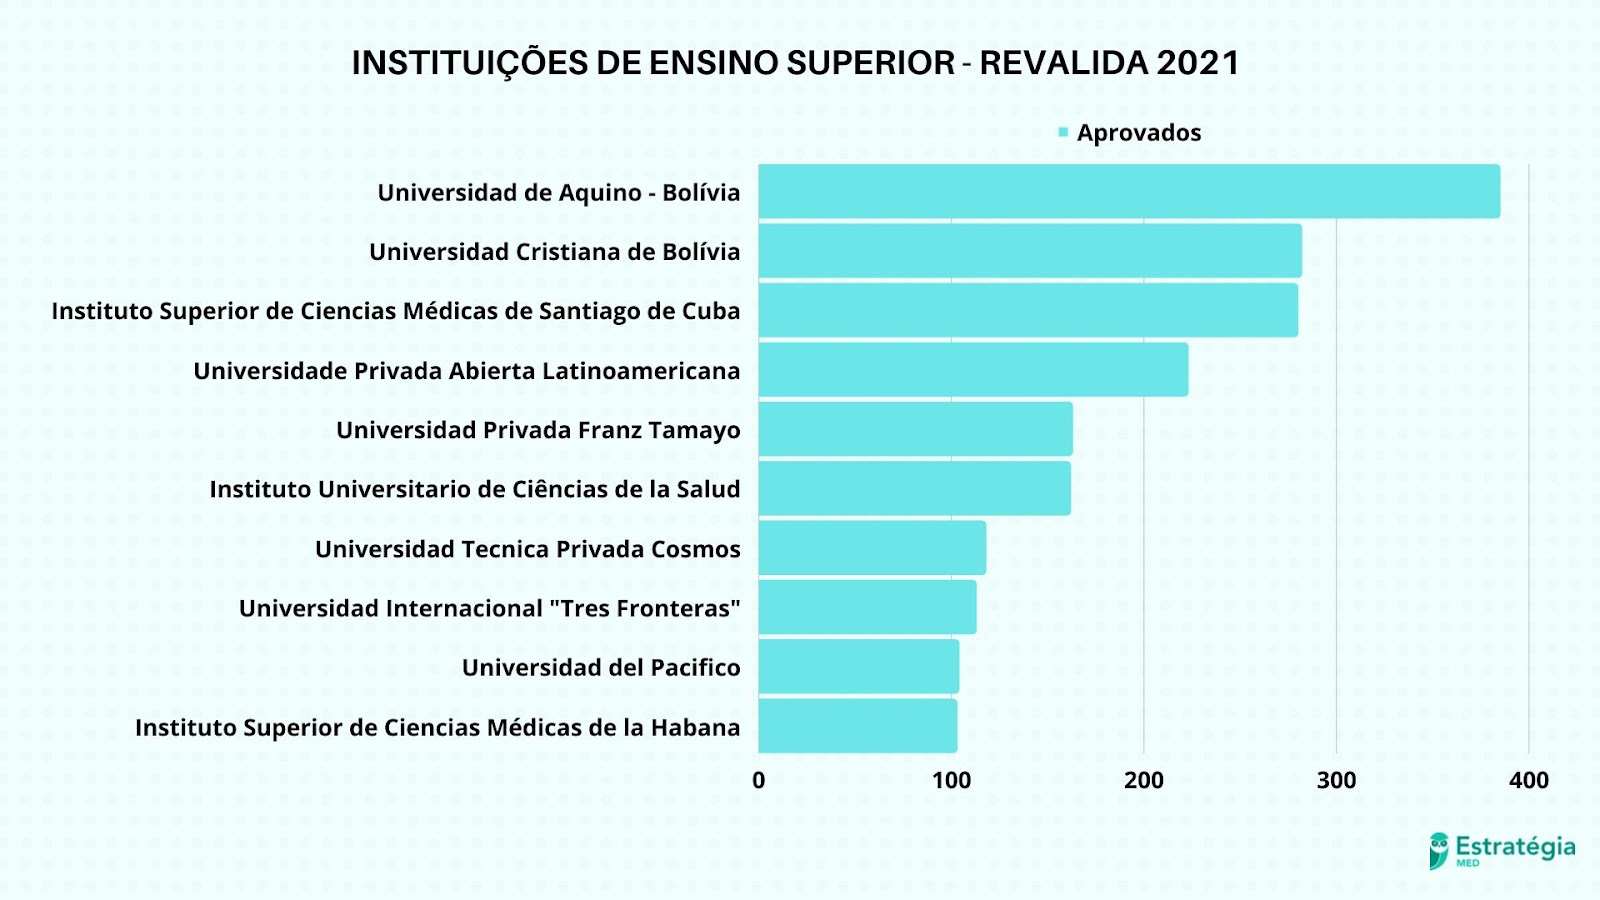 Instituições de ensino superior dos aprovados no Revalida 2021